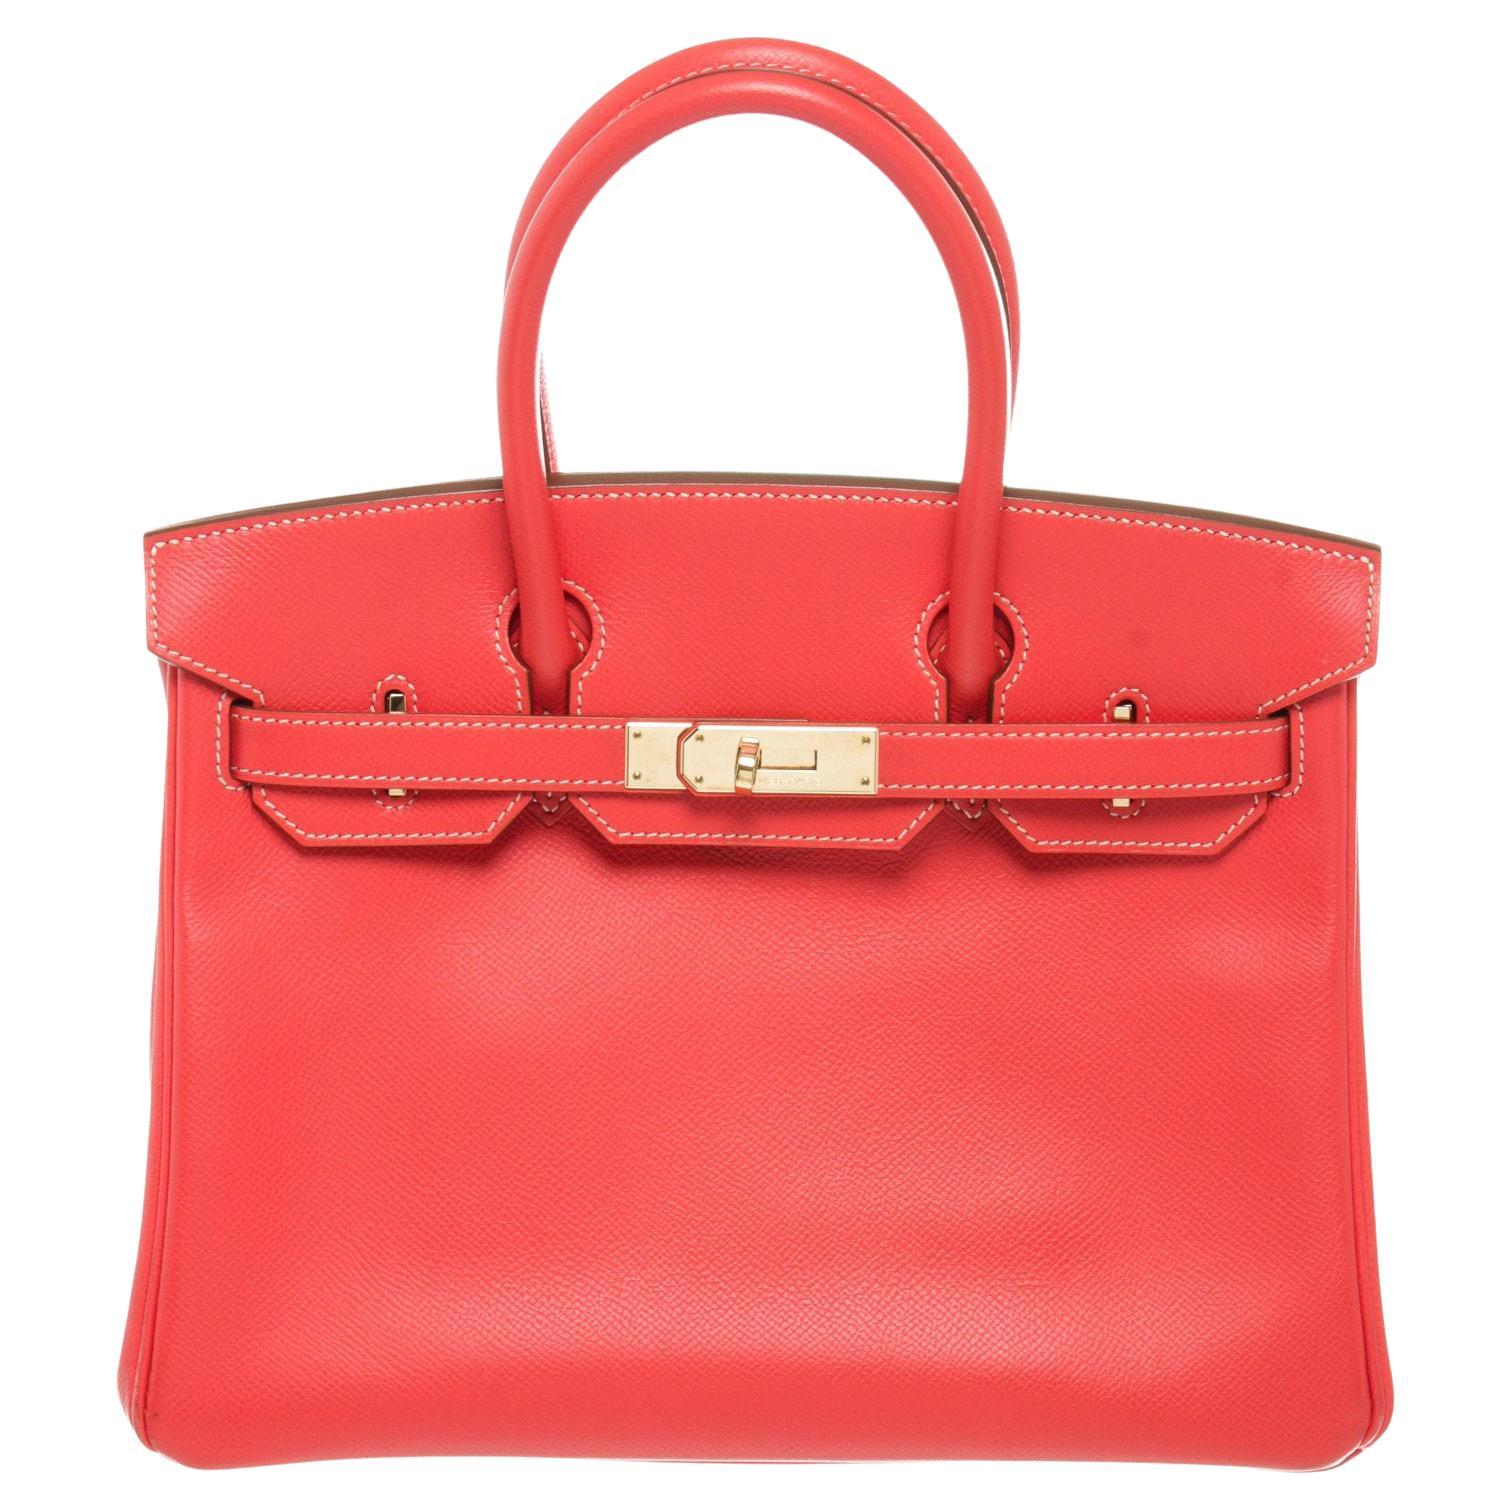 Hermes Red Leather Birkin 30cm Satchel Bag